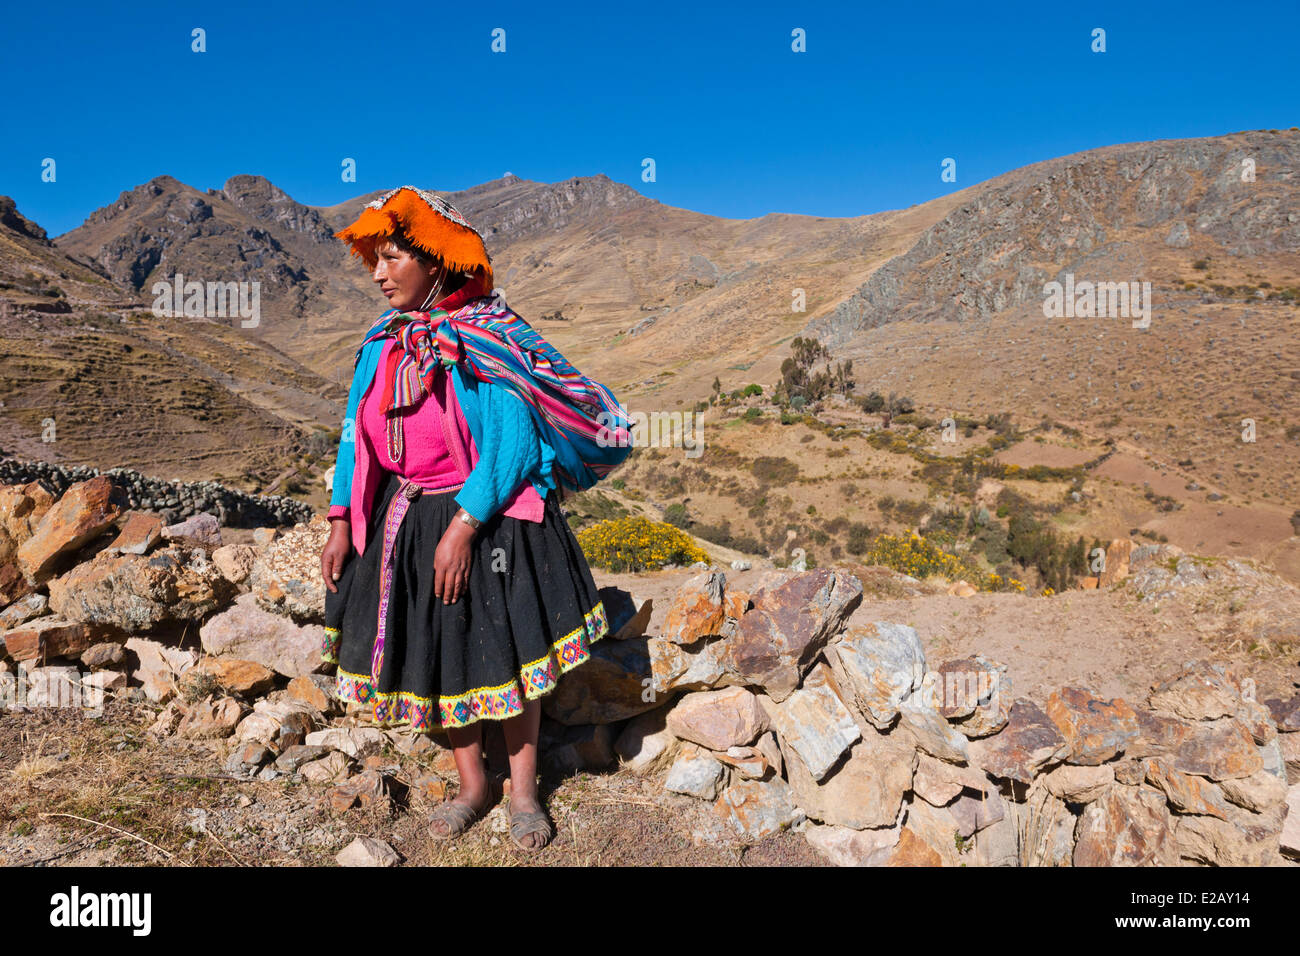 Peru, Cuzco Provinz, das Heilige Tal der Inkas, peruanische Frau und Landschaft von einem Wüstental der Anden Stockfoto